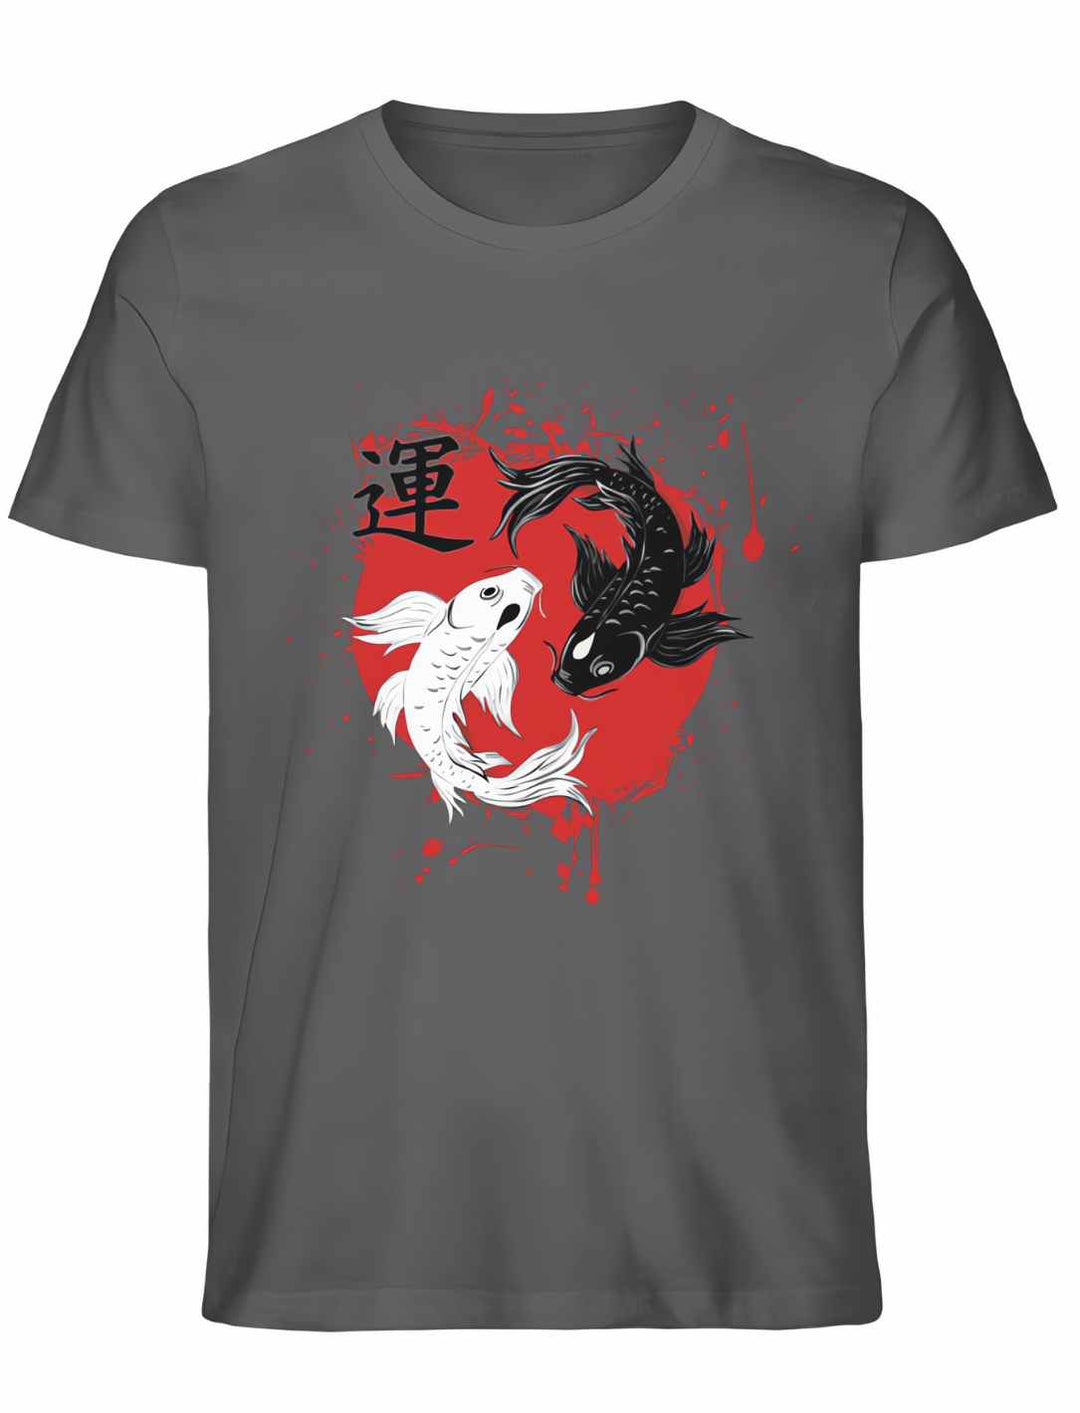 Harmonic Koi Unisex T-Shirt in Anthrazit – Dunkle Farbgebung mit kontrastreichem Koi-Design